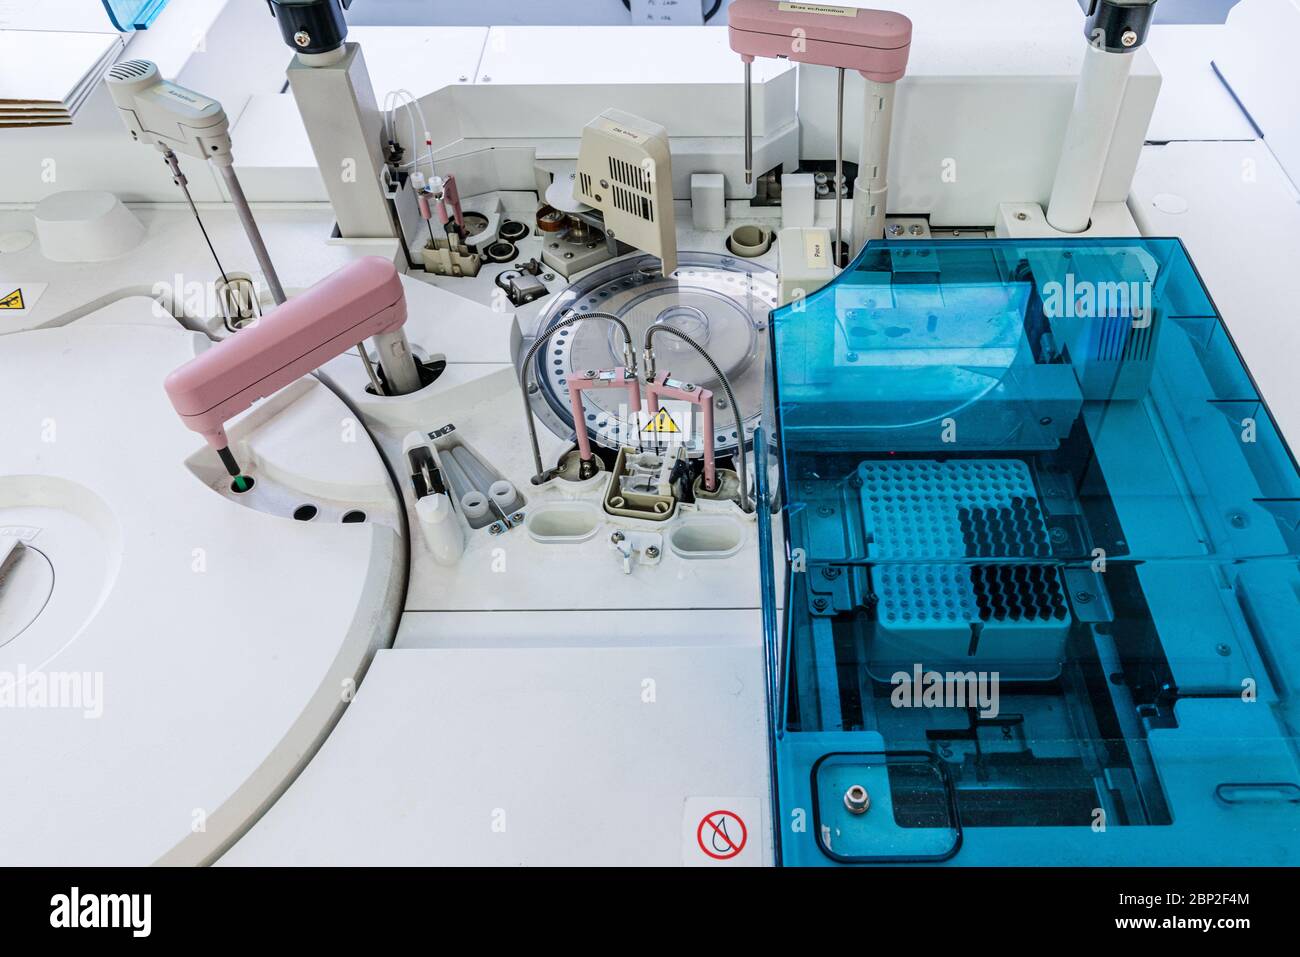 Appareil de test sérologique automatisé pour la détection des anticorps liés au Covid 19 dans le sang, laboratoire de biologie médicale, Cosem Mirosmenil Pa Banque D'Images